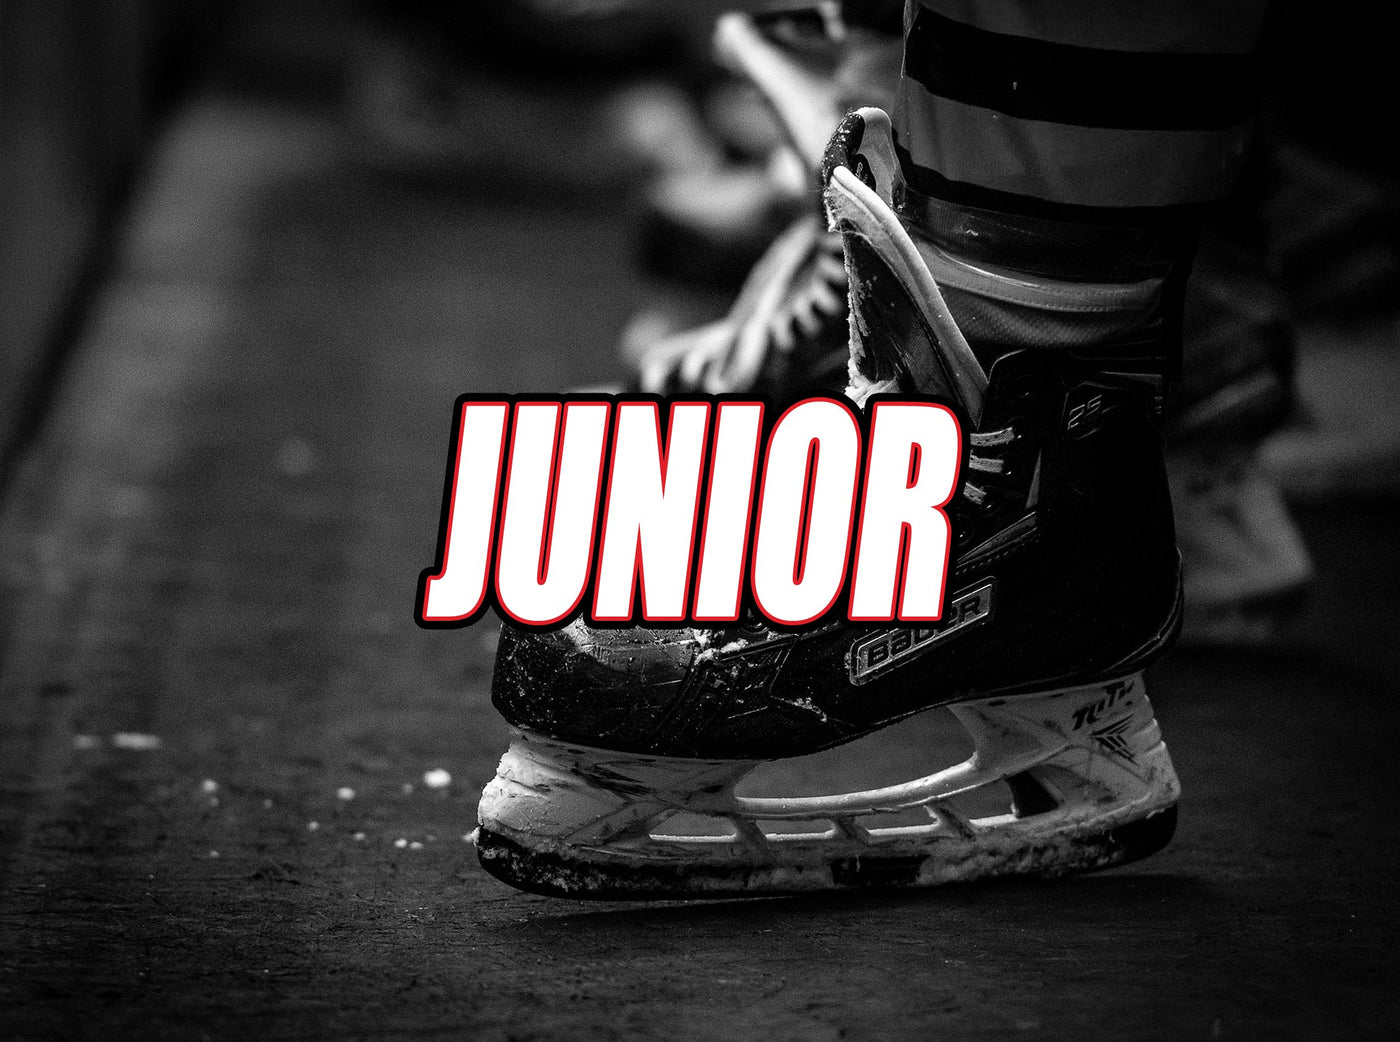 Hockey Patins Junior